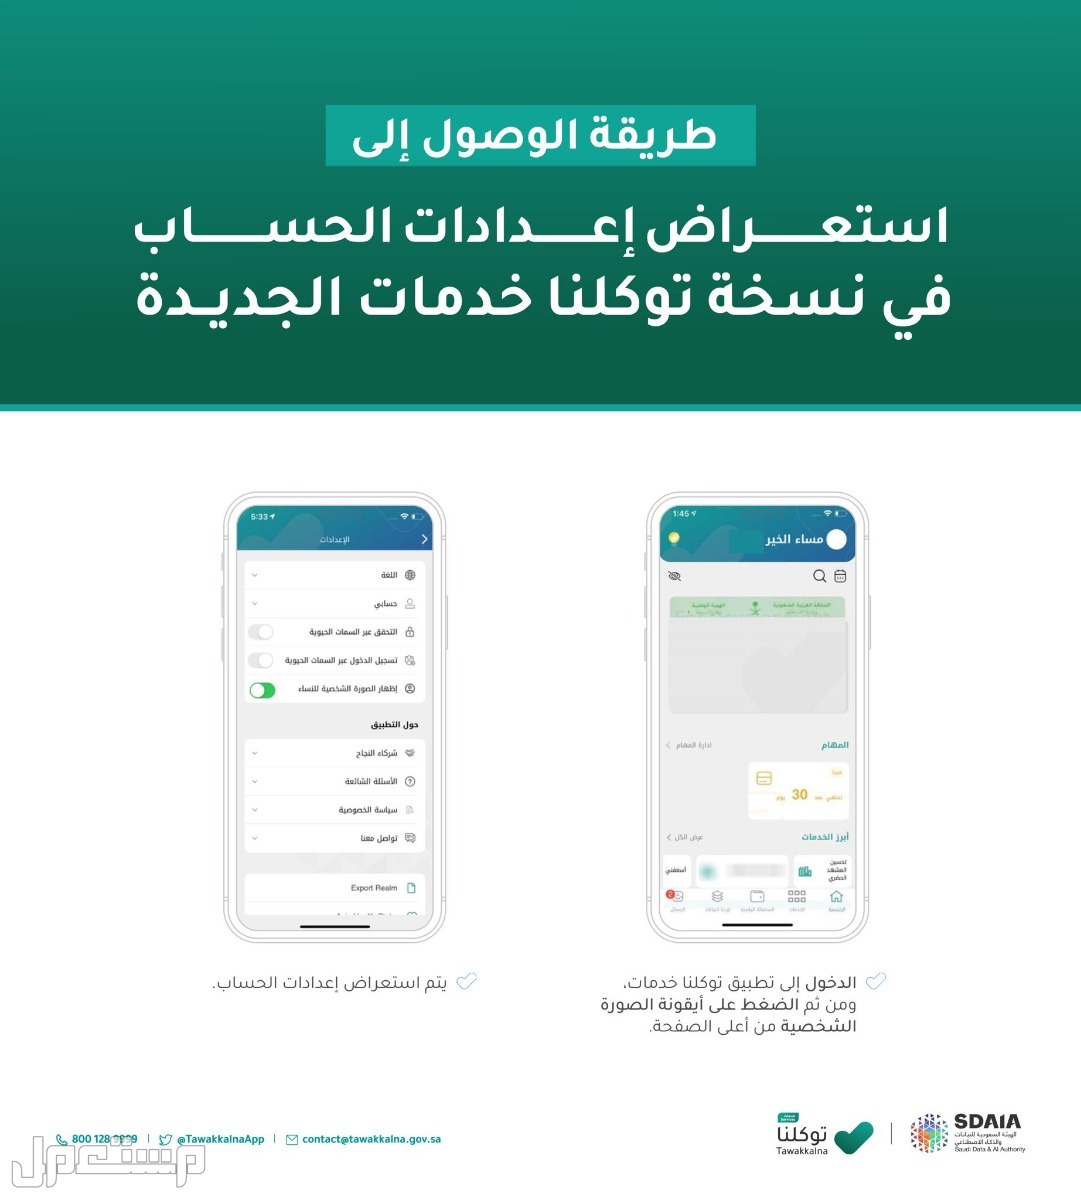 خطوات استعراض إعدادات الحساب في توكلنا خدمات في عمان خطوات استعراض إعدادات الحساب في توكلنا